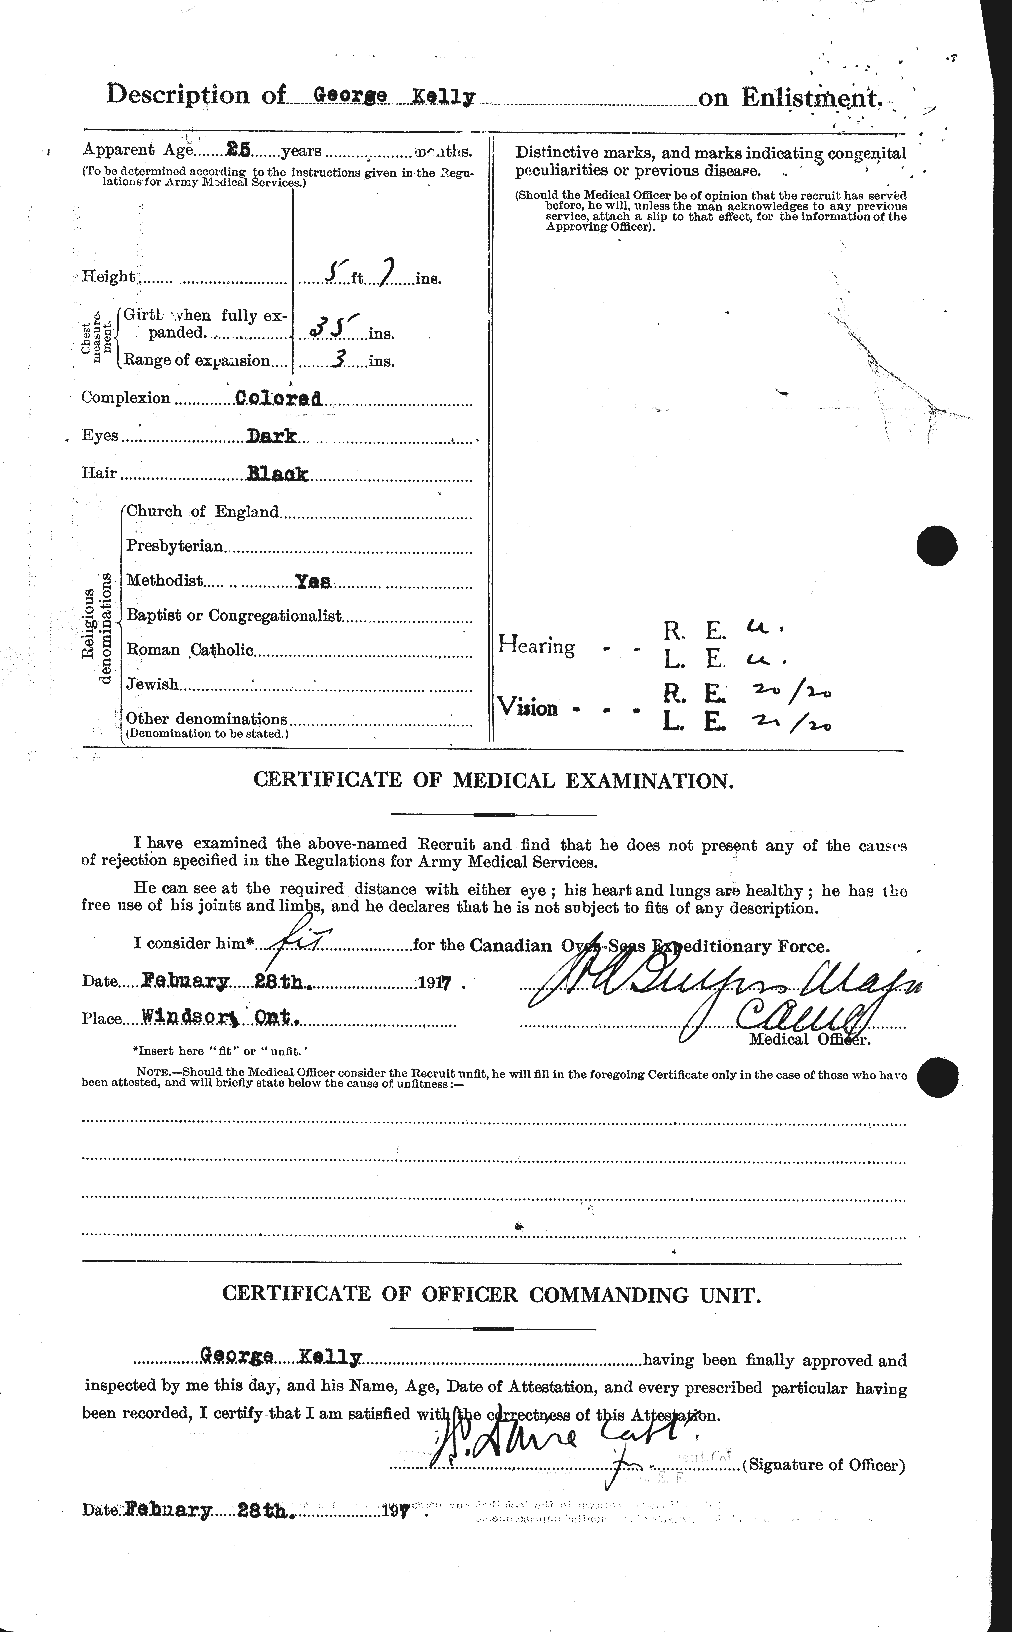 Dossiers du Personnel de la Première Guerre mondiale - CEC 431464b